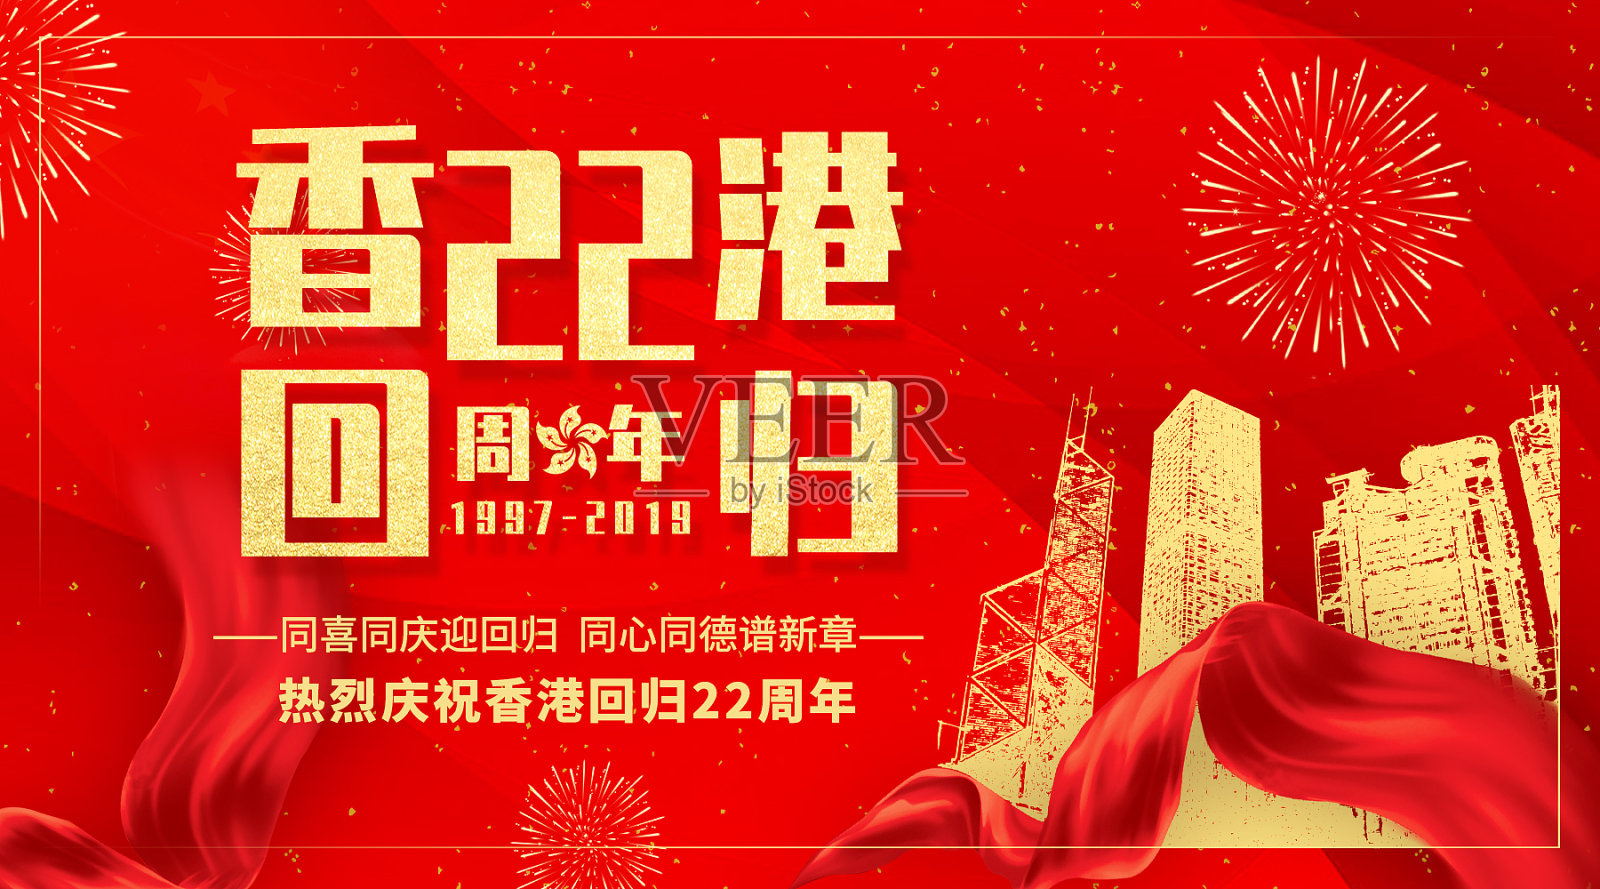 香港回归22周年红色简约大气微博配图设计模板素材